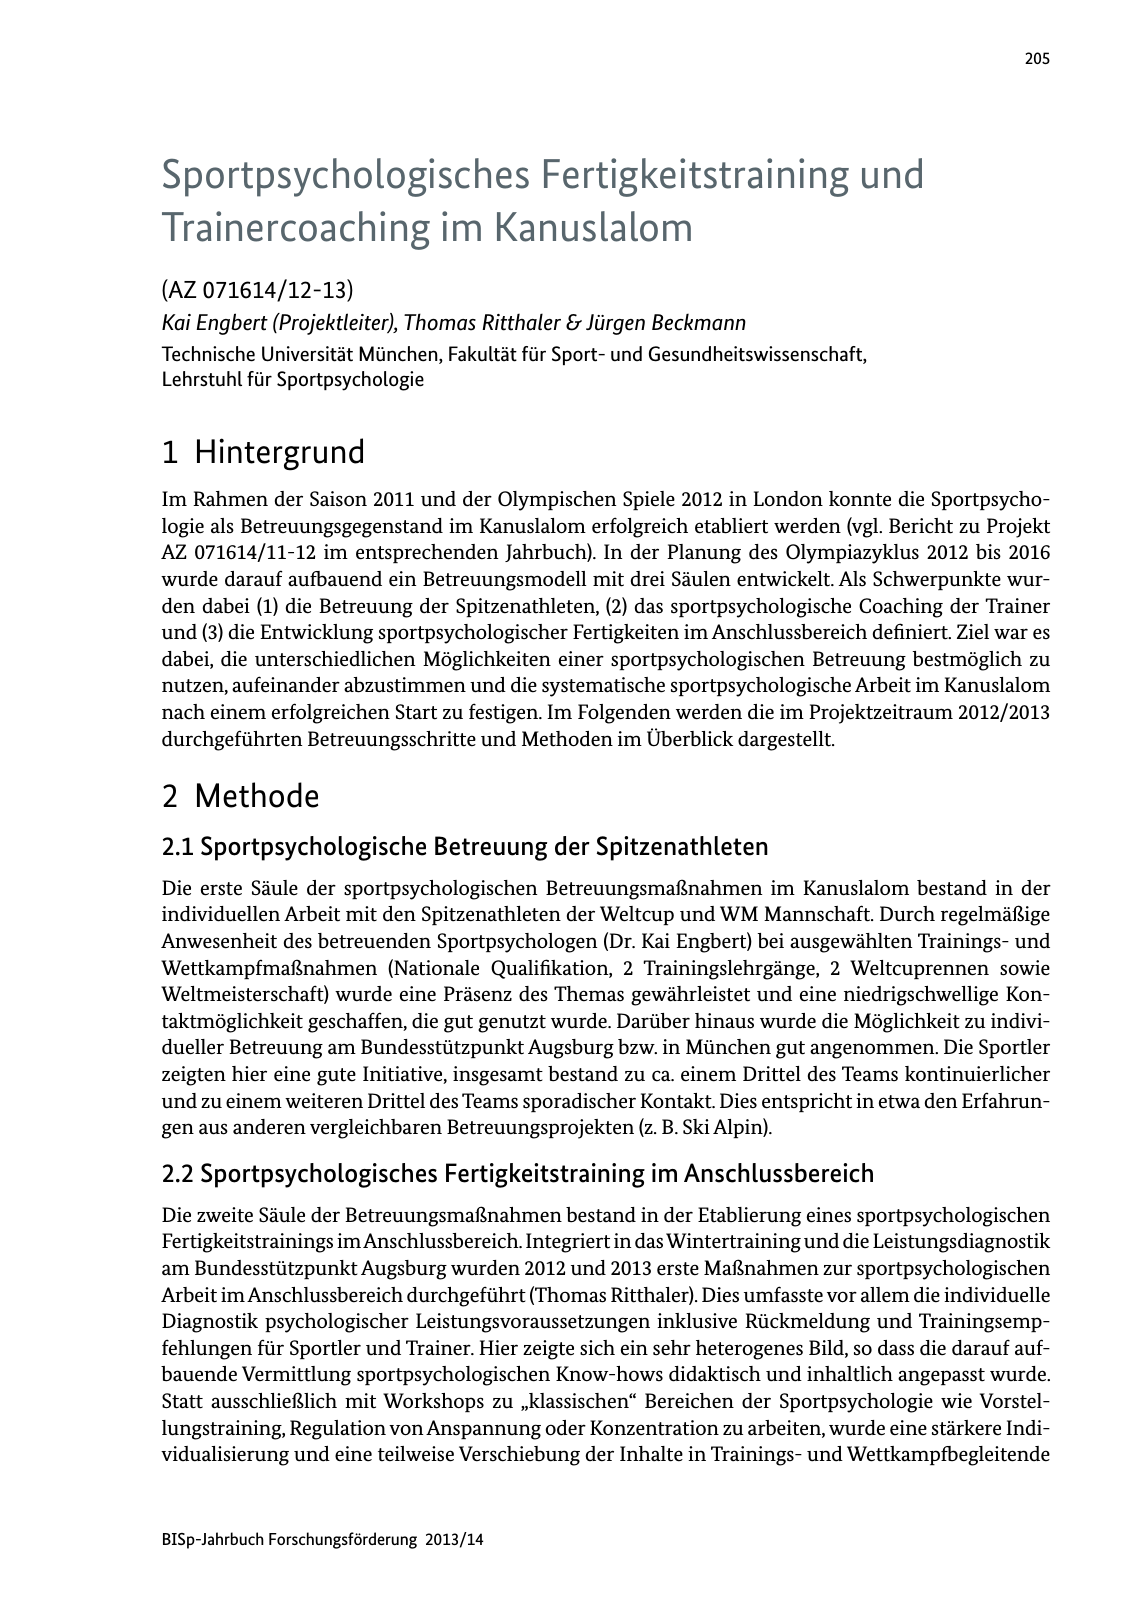 Vorschau BISp-Jahrbuch Forschungsförderung 2013/14 Seite 206